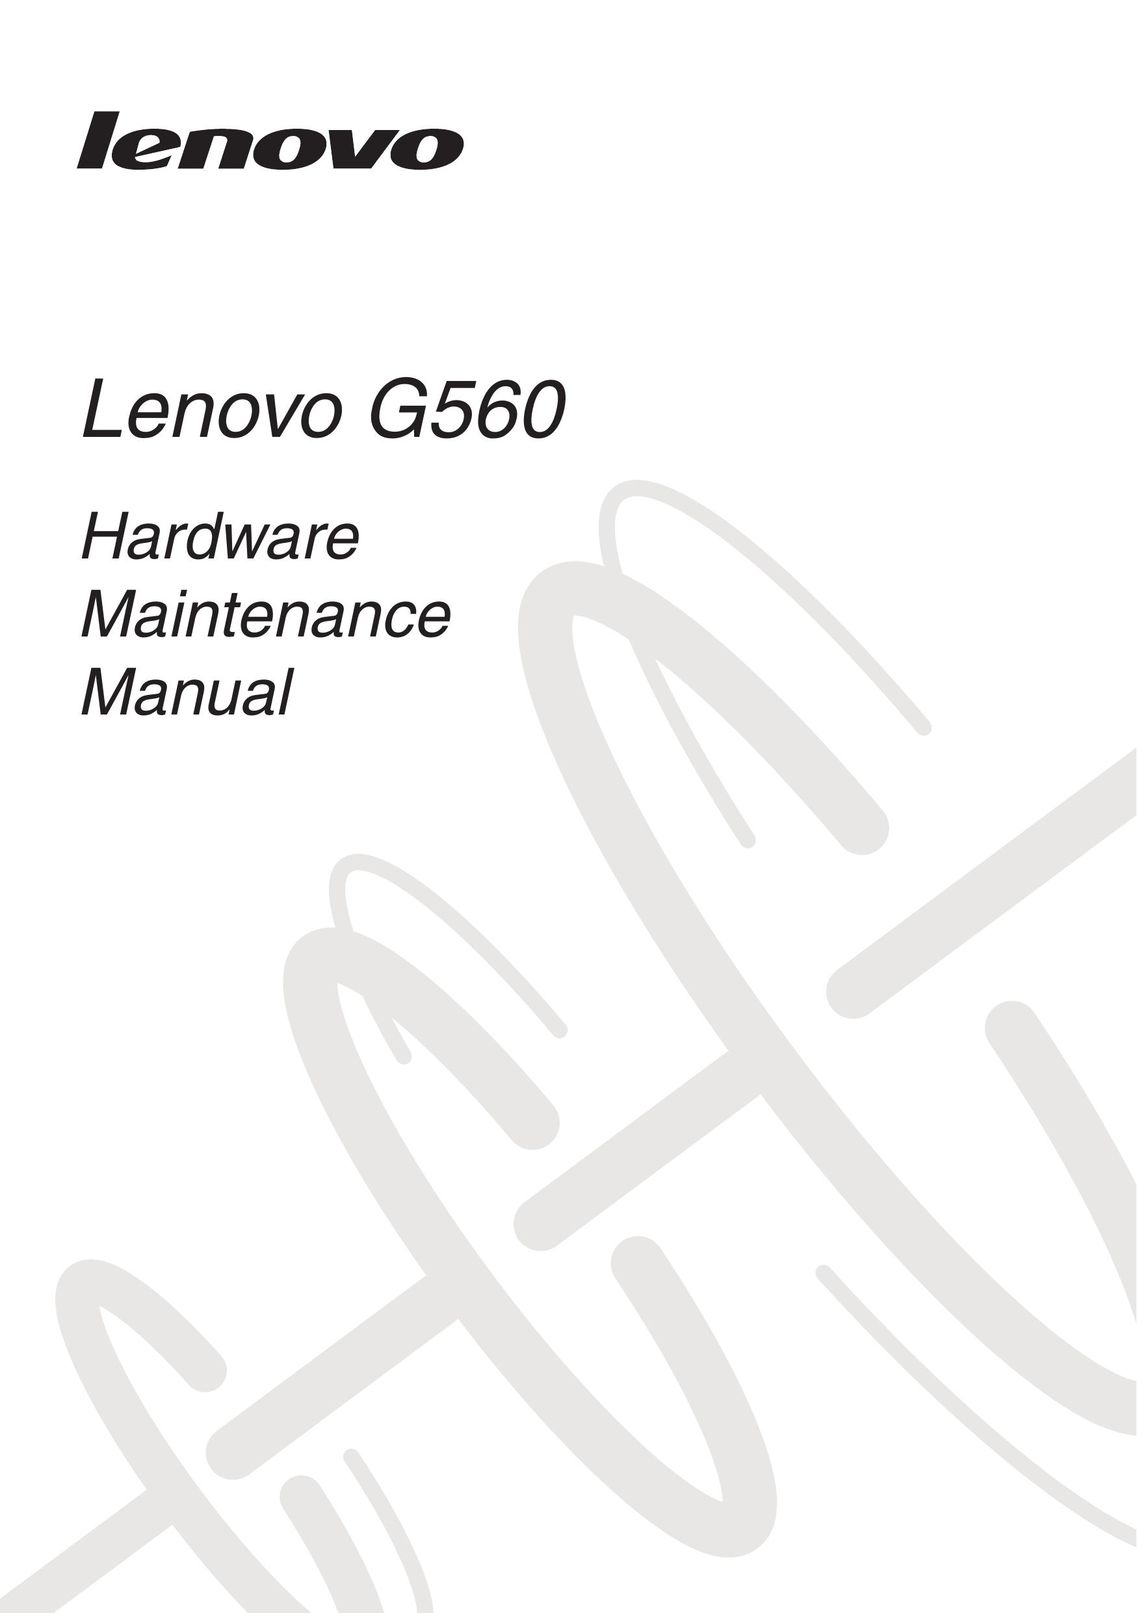 Lenovo 0679ALU Laptop User Manual